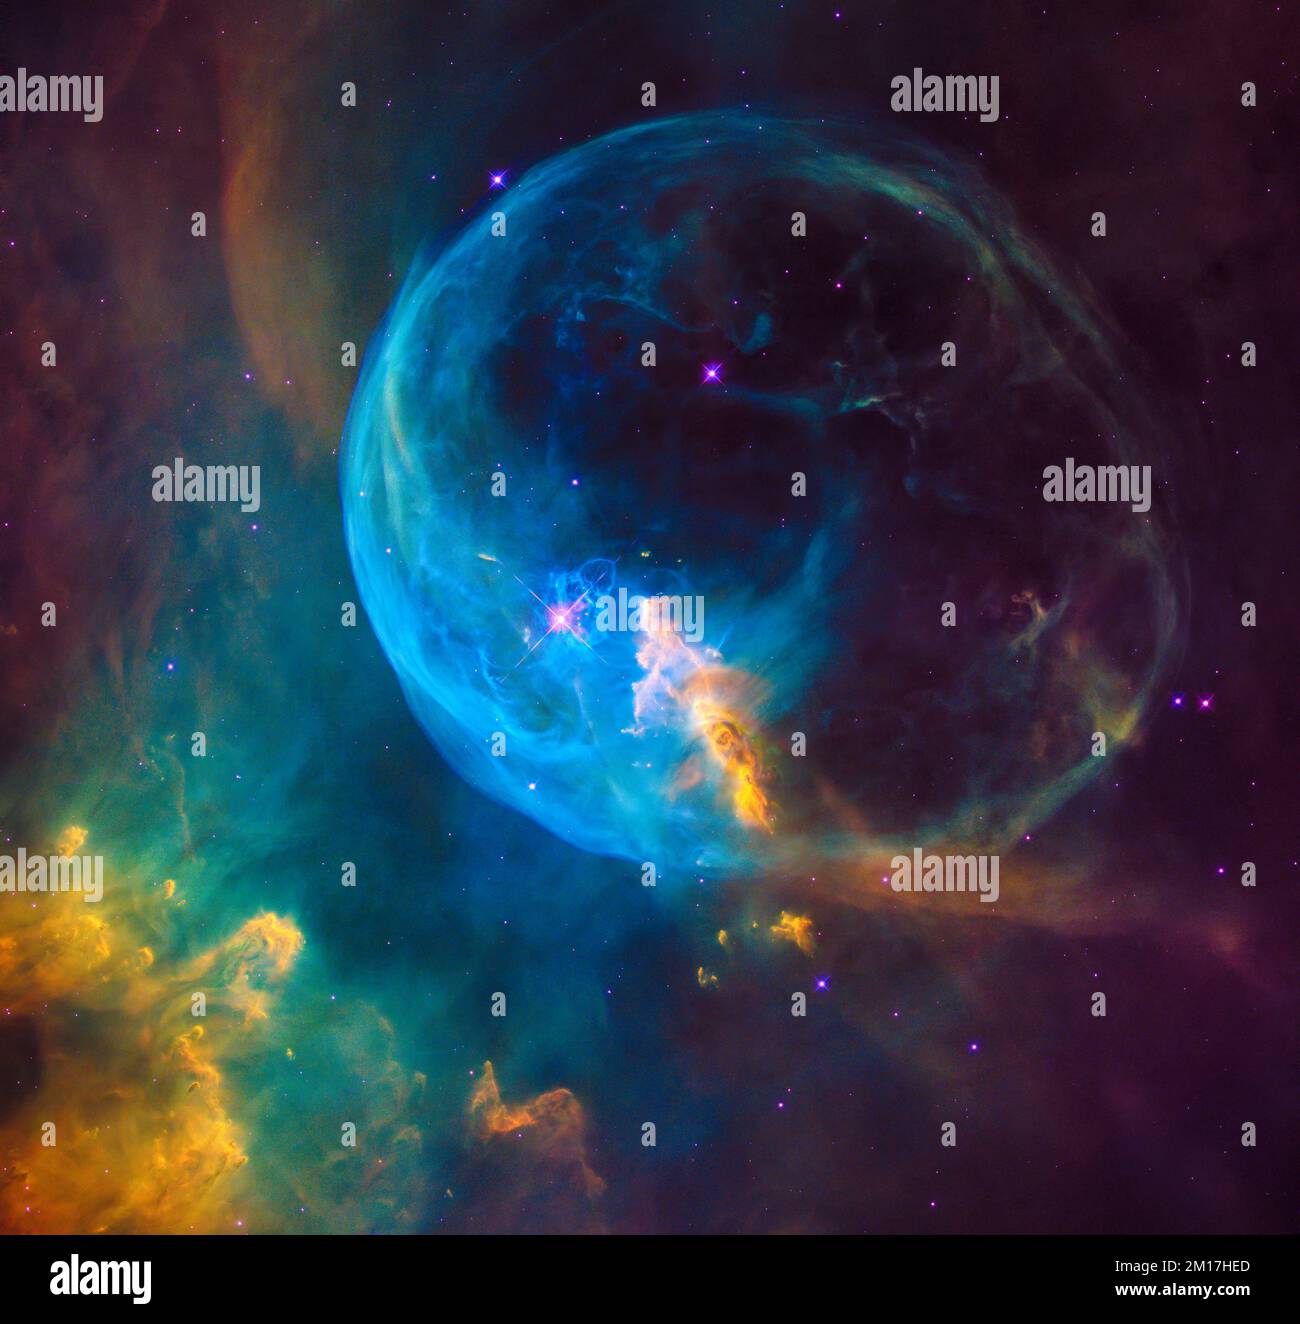 Ein riesiger Stern erzeugt eine Blase, die in den Weltraum geblasen wird, auch bekannt als der Blasennebel. Digital optimiert. Elemente dieses Bildes, bereitgestellt von der NASA. Stockfoto